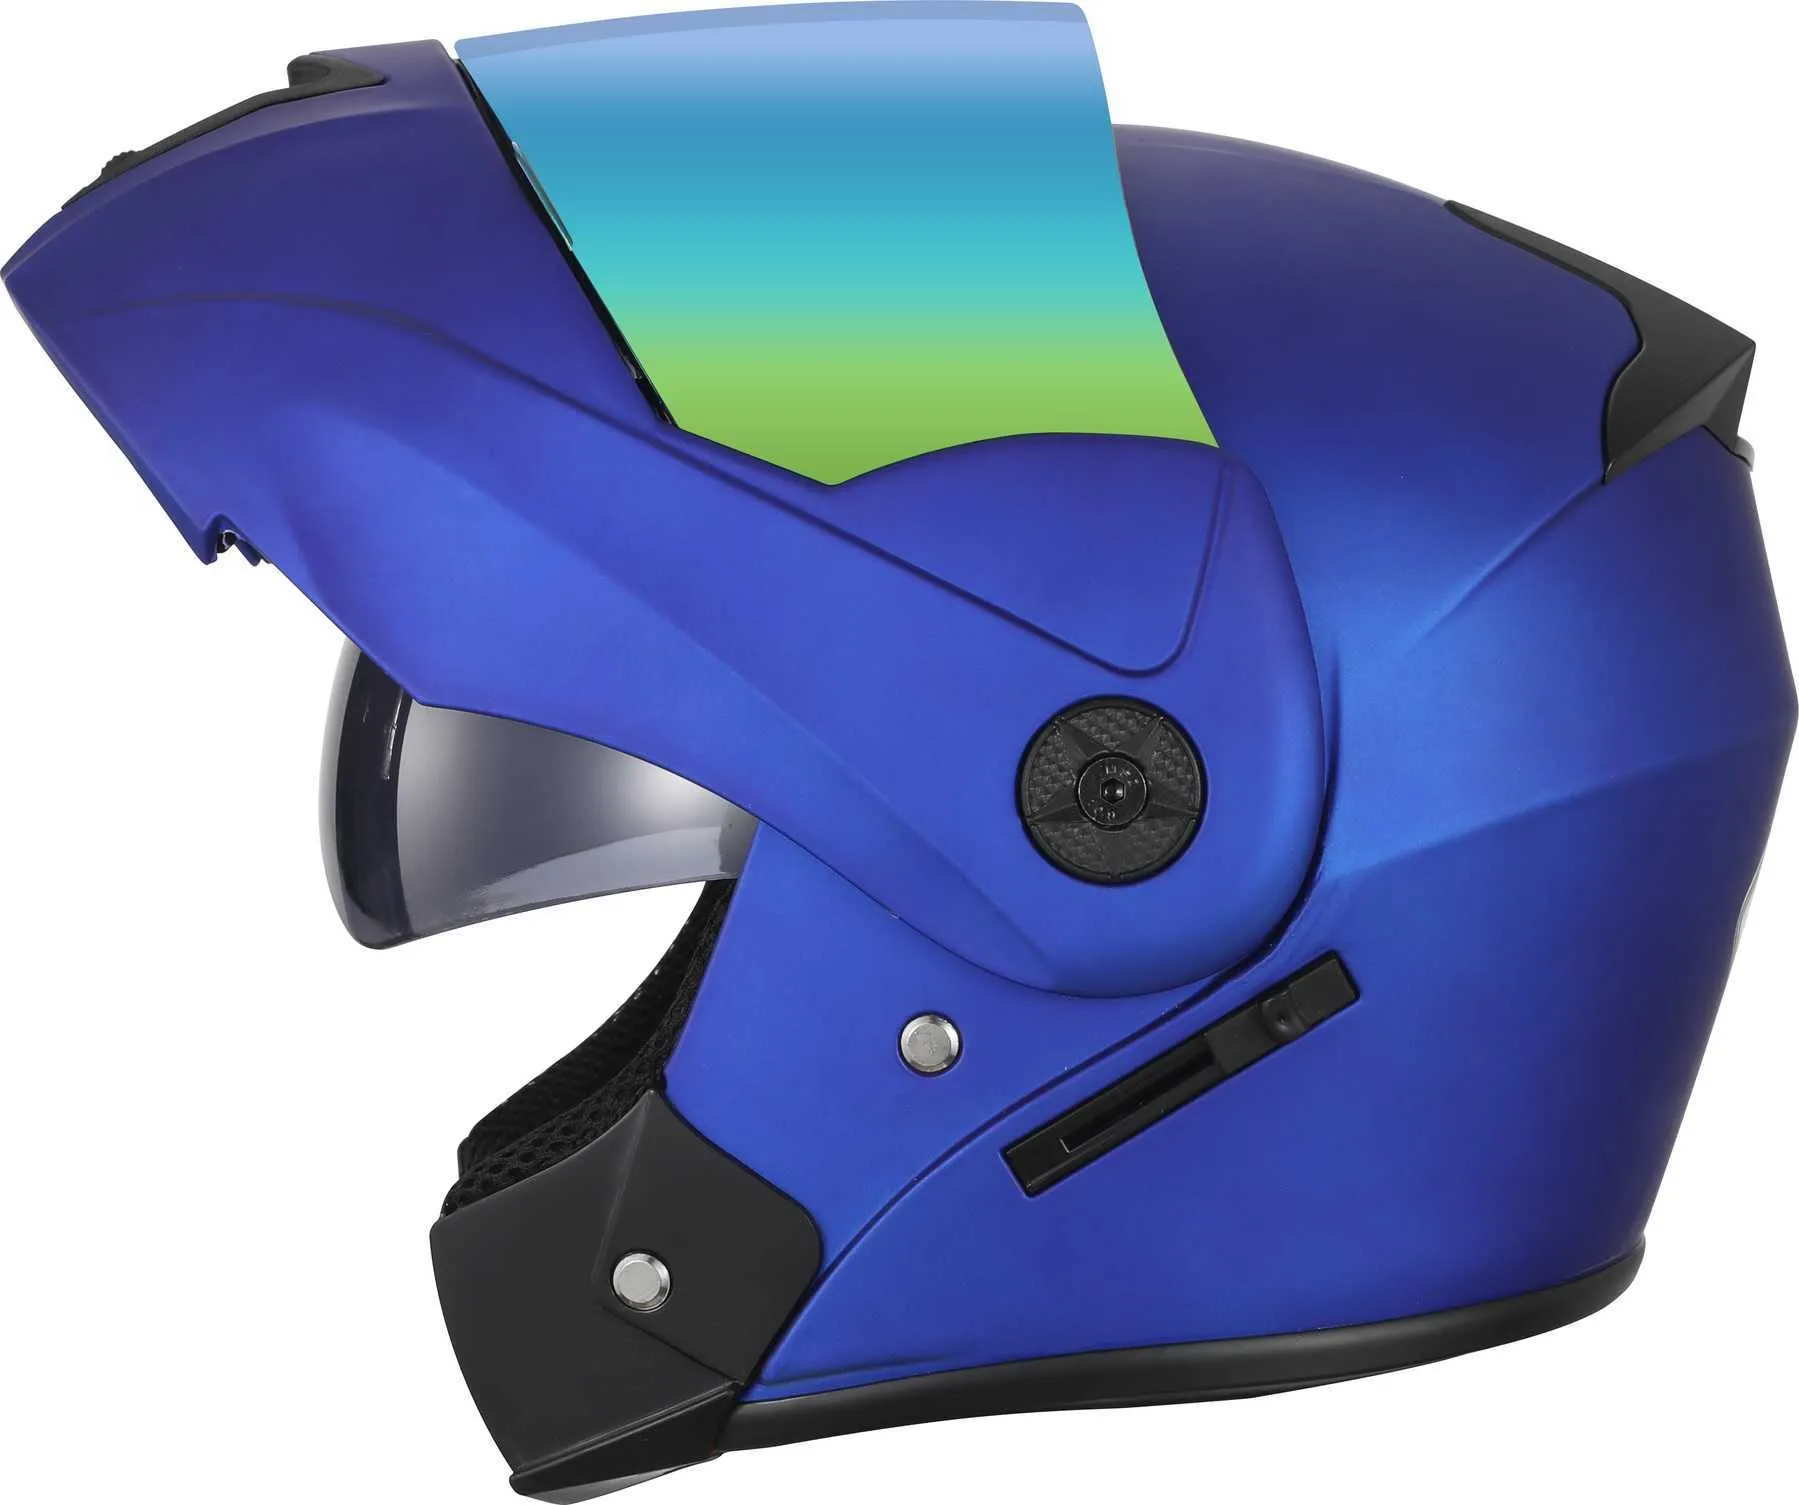 New flip up motorbike Helmet for adults Modular Dual Lens visors Full Face Motorcycle Helmet Safe motocross Helmets casco moto Q06273d